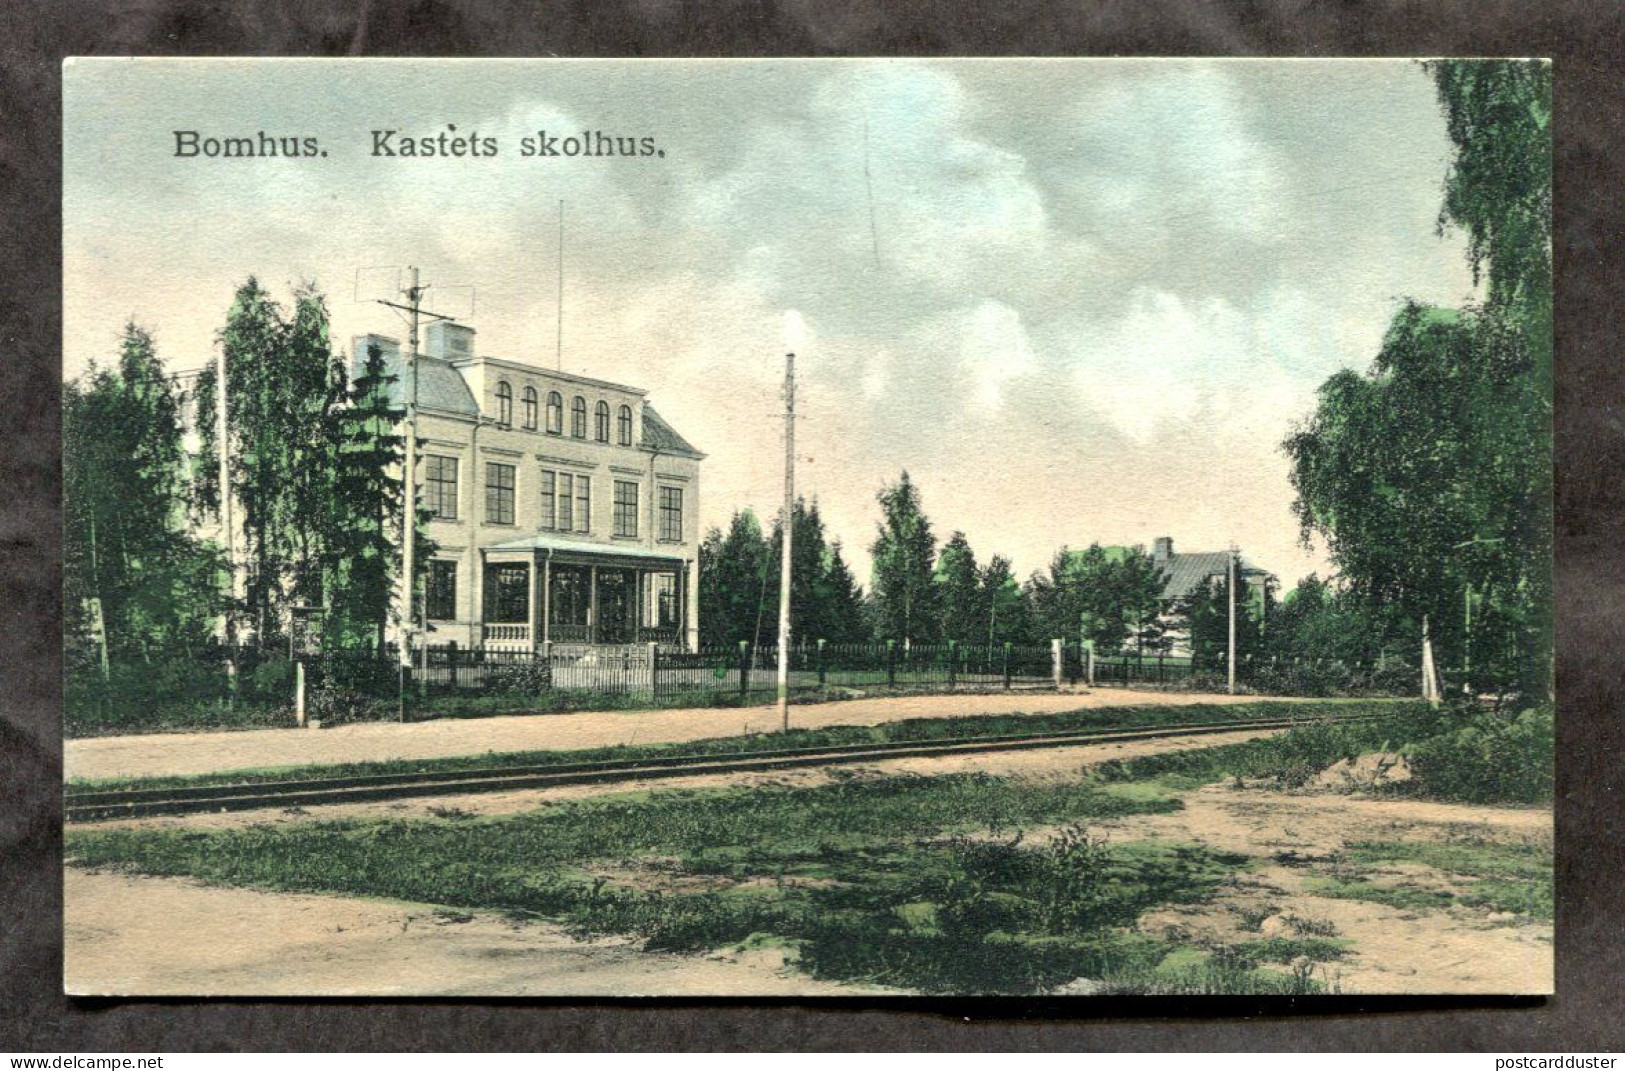 SWEDEN Gävle Bomhus 1910s Postcard (h1091) - Sweden